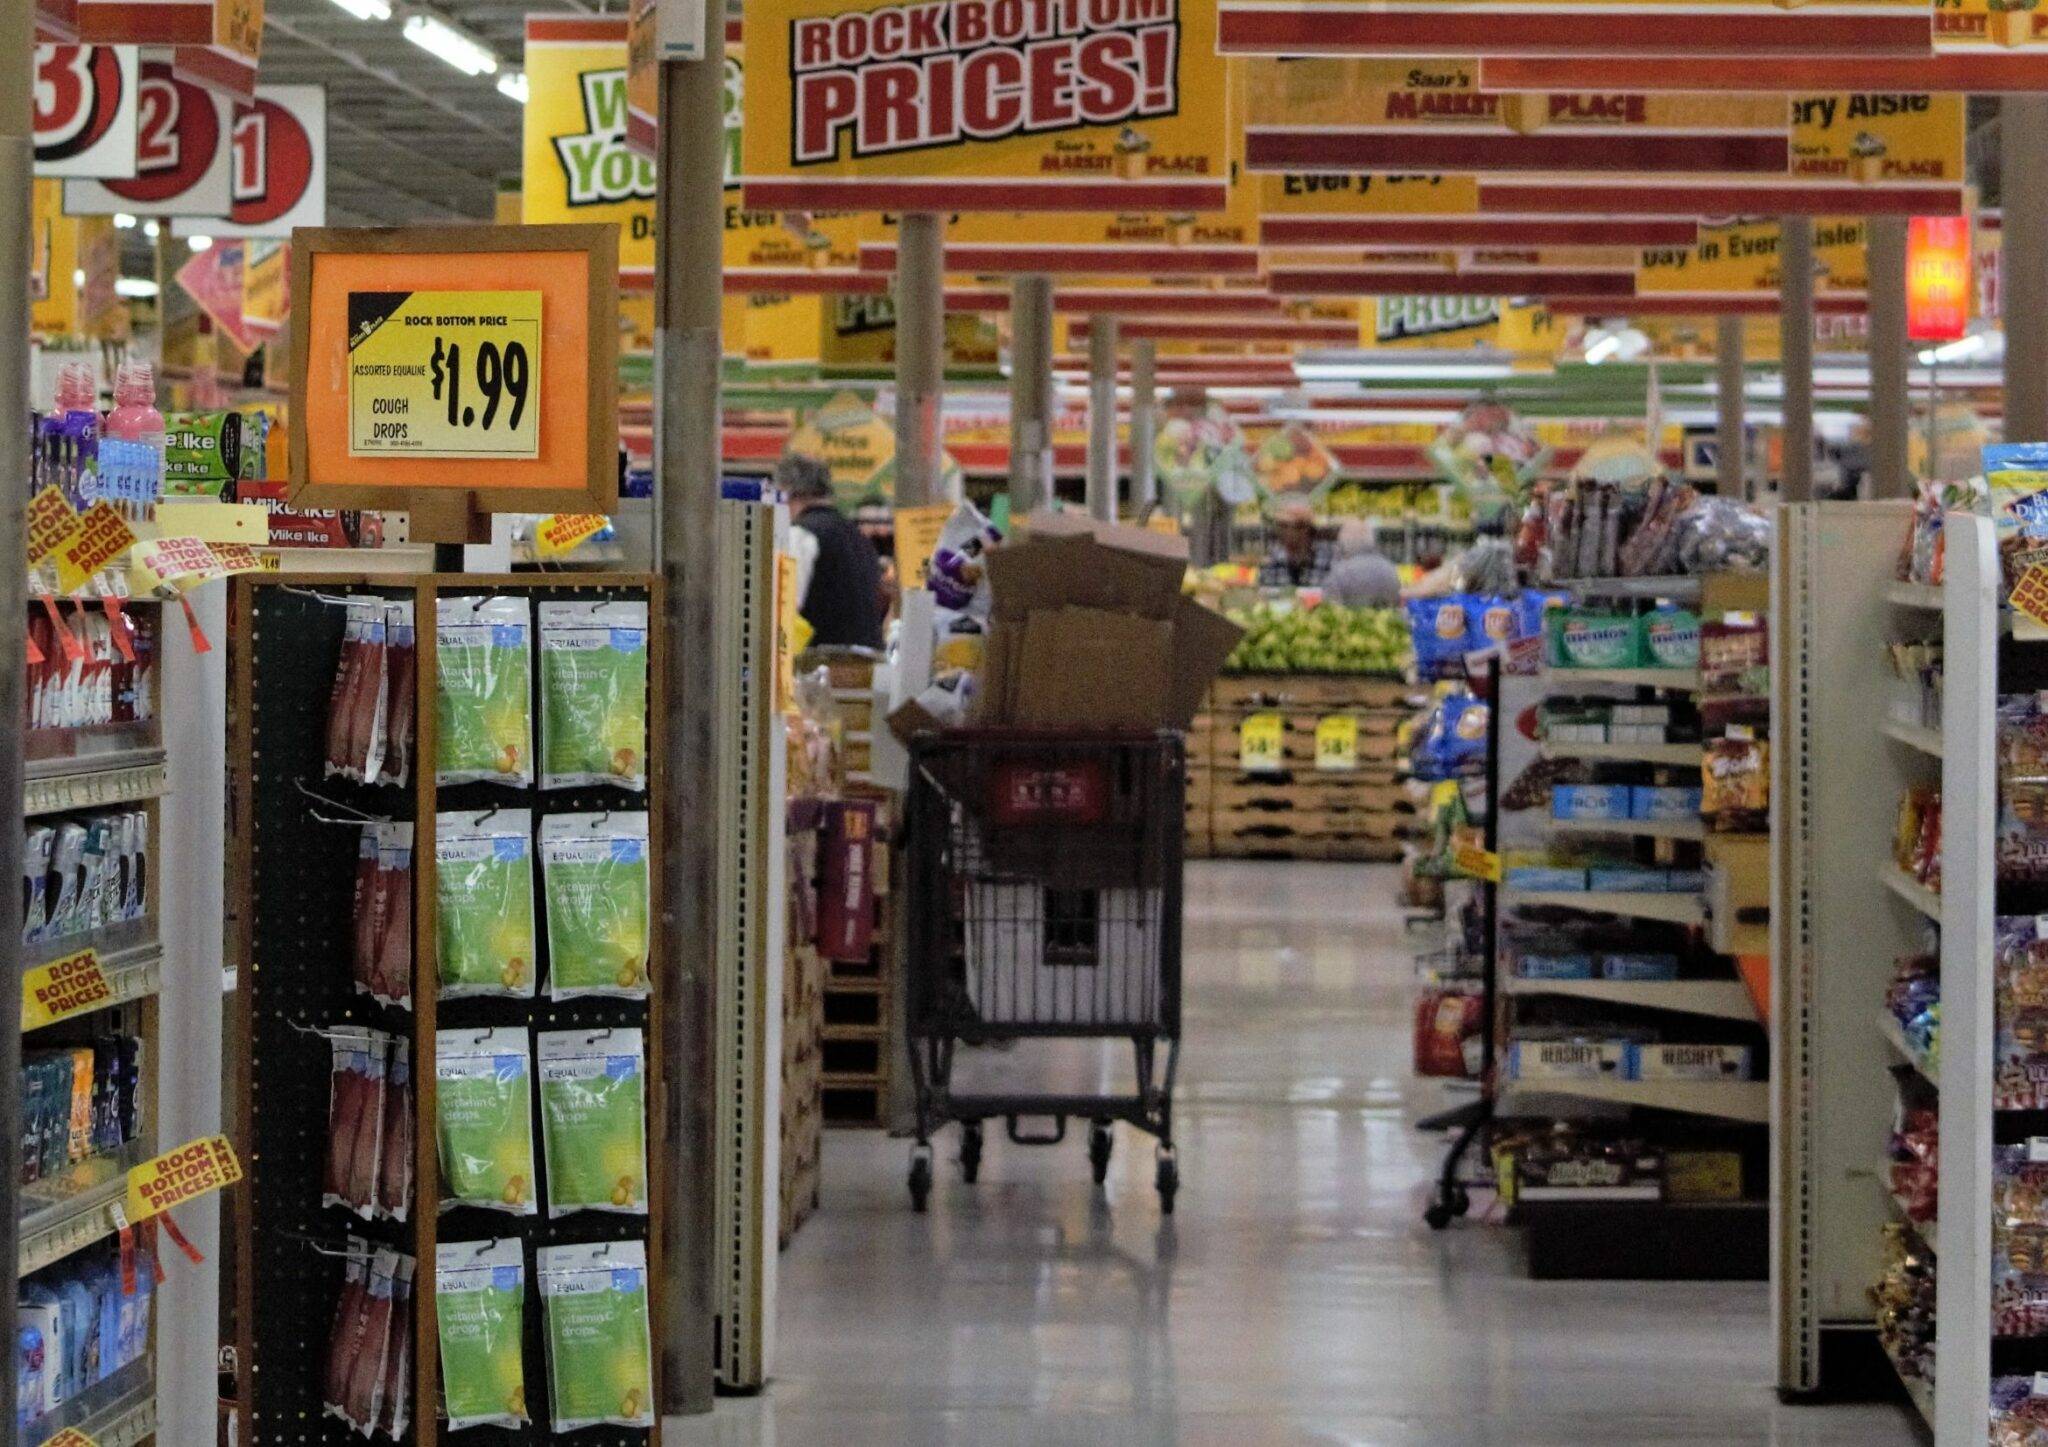 Imagem de um supermercado para ilustrar o ambiente de varejo que é onde podem ser aplicadas as taticas para reter clientes e aumentar as vendas citadas no blogpost